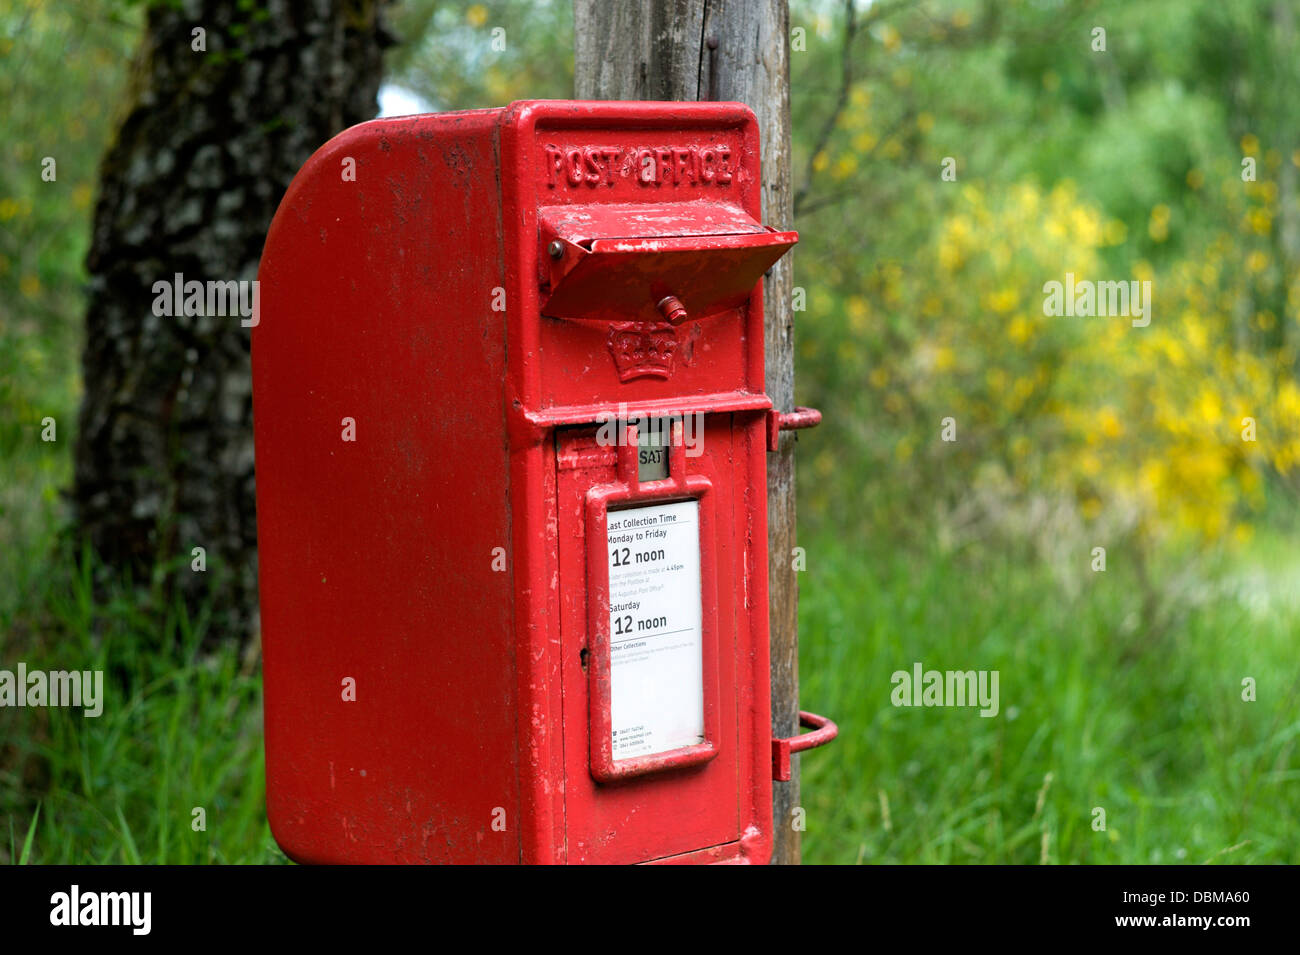 Briefkasten mit anti-Wirrspanbildung Abdeckung Stockfotografie - Alamy